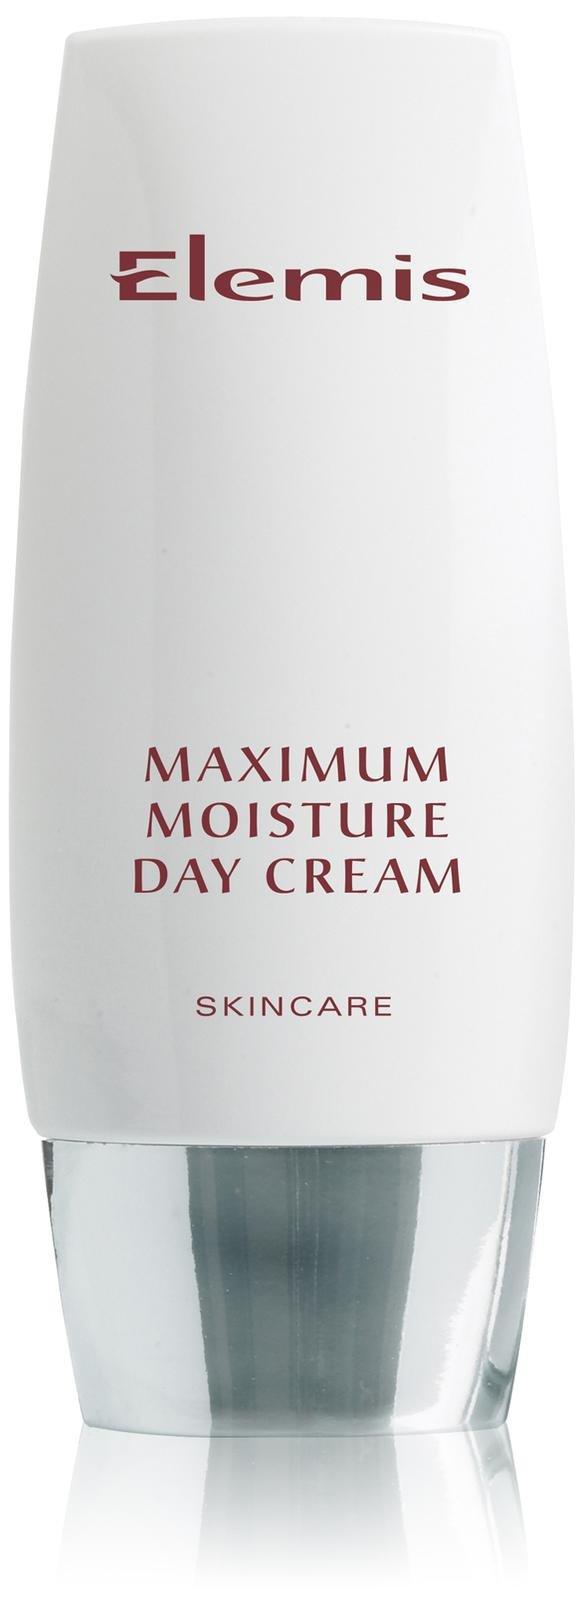 Elemis Daily Skincare Maximum Moisture Day Cream